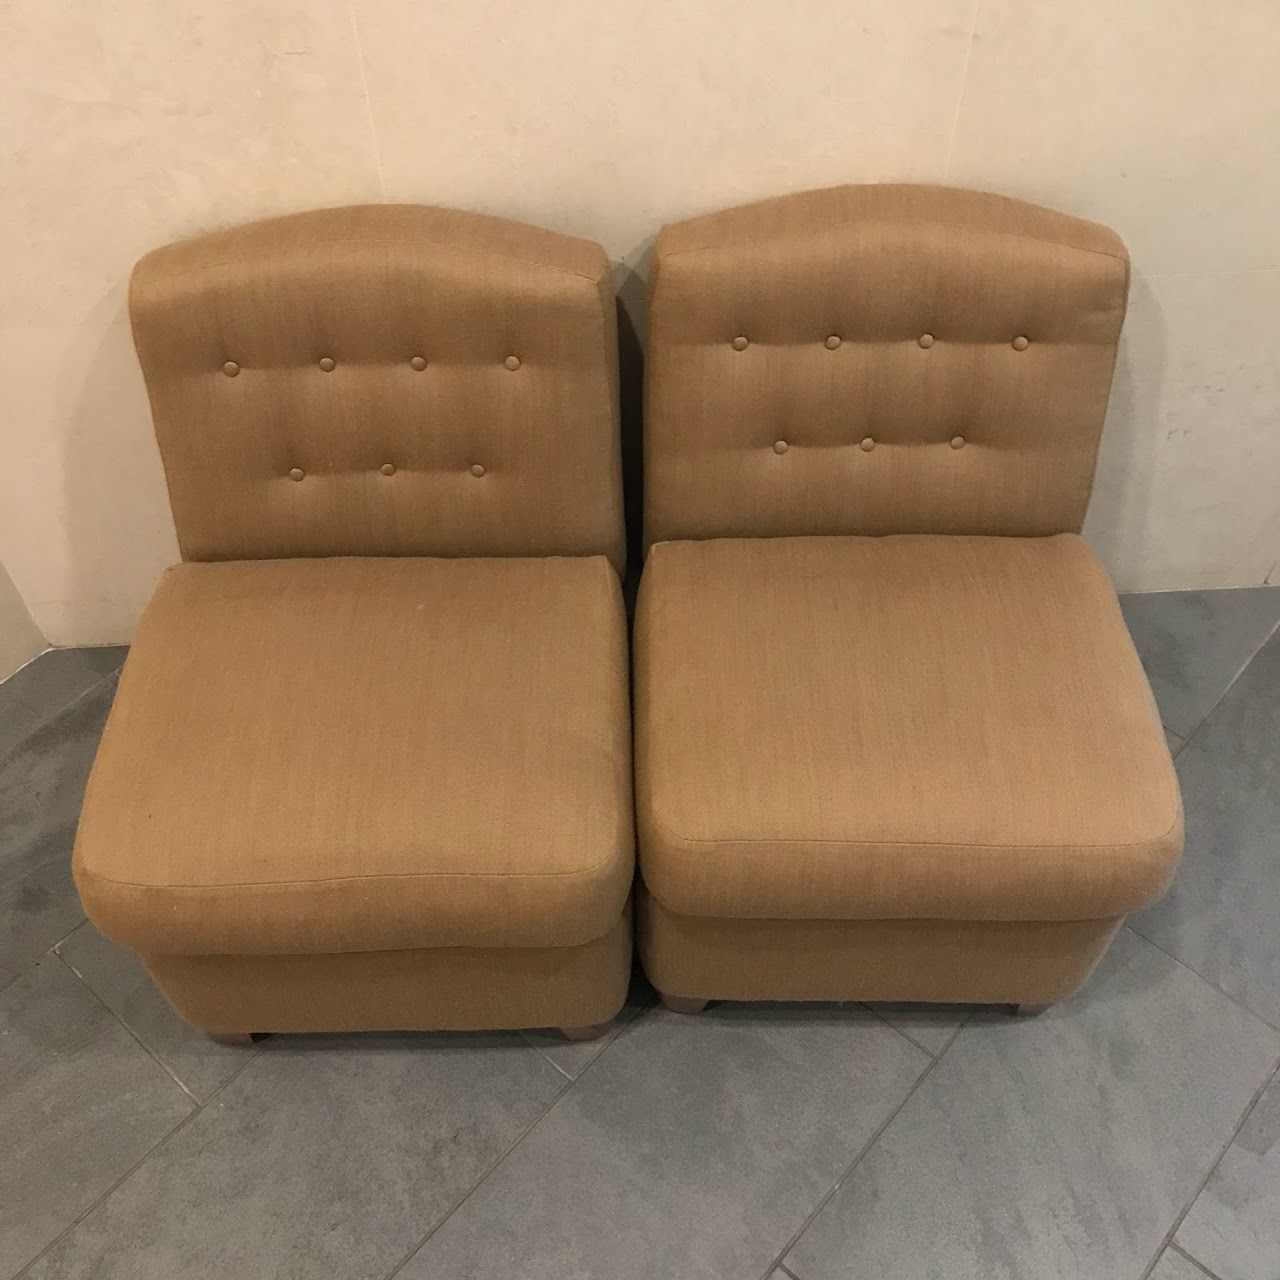 Diminutive Tufted Wool Slipper Chair Pair